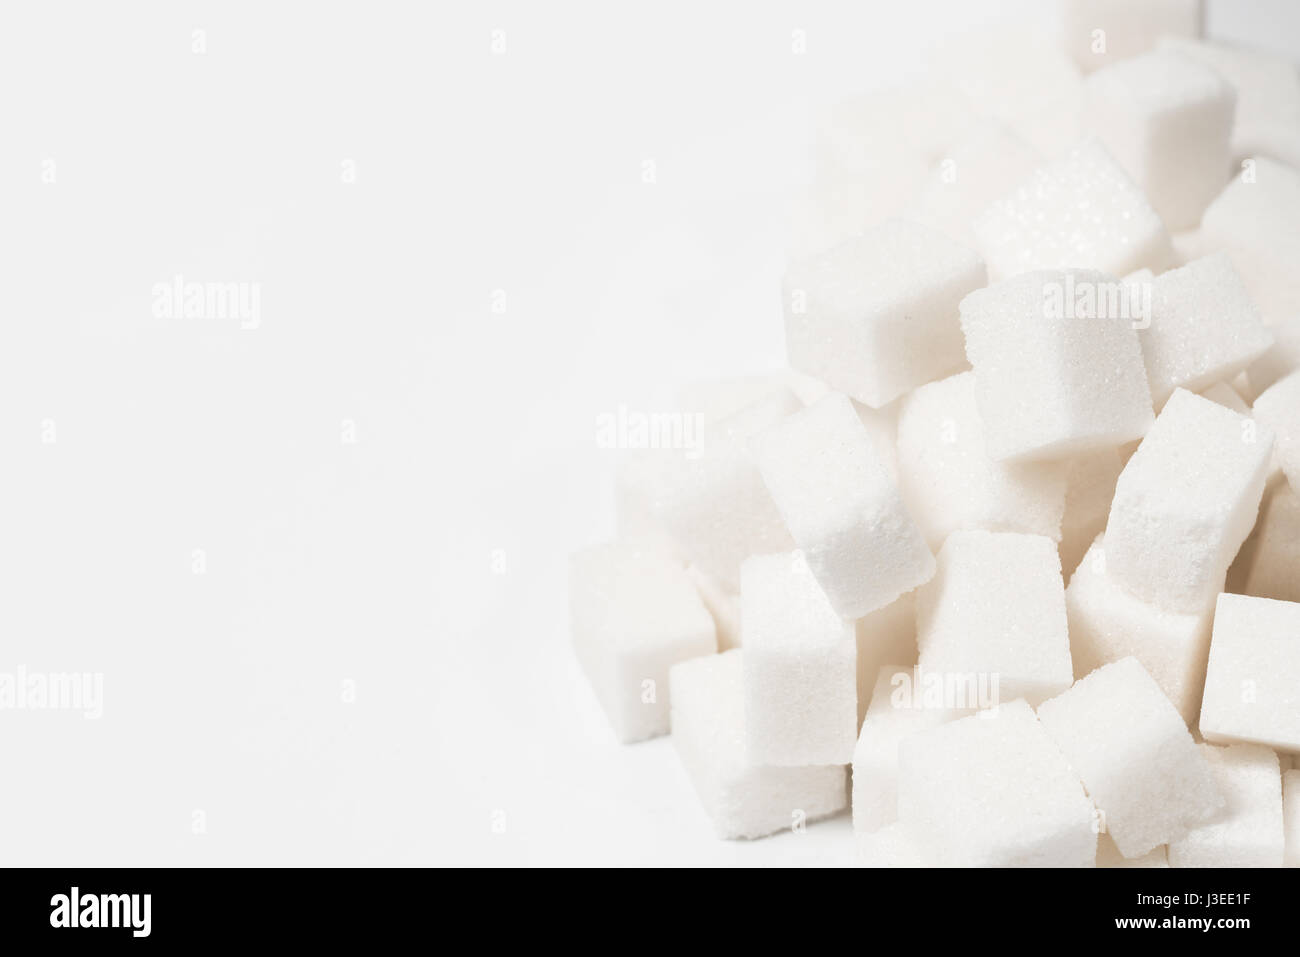 Sfondo di zucchero dolce ingrediente alimentare con una chiusura di una pila di deliziosi grumi bianchi di cubetti come un simbolo della cucina e panificazione e la dieta dei rischi per la salute legati al diabete e assunzione di calorie. Foto Stock